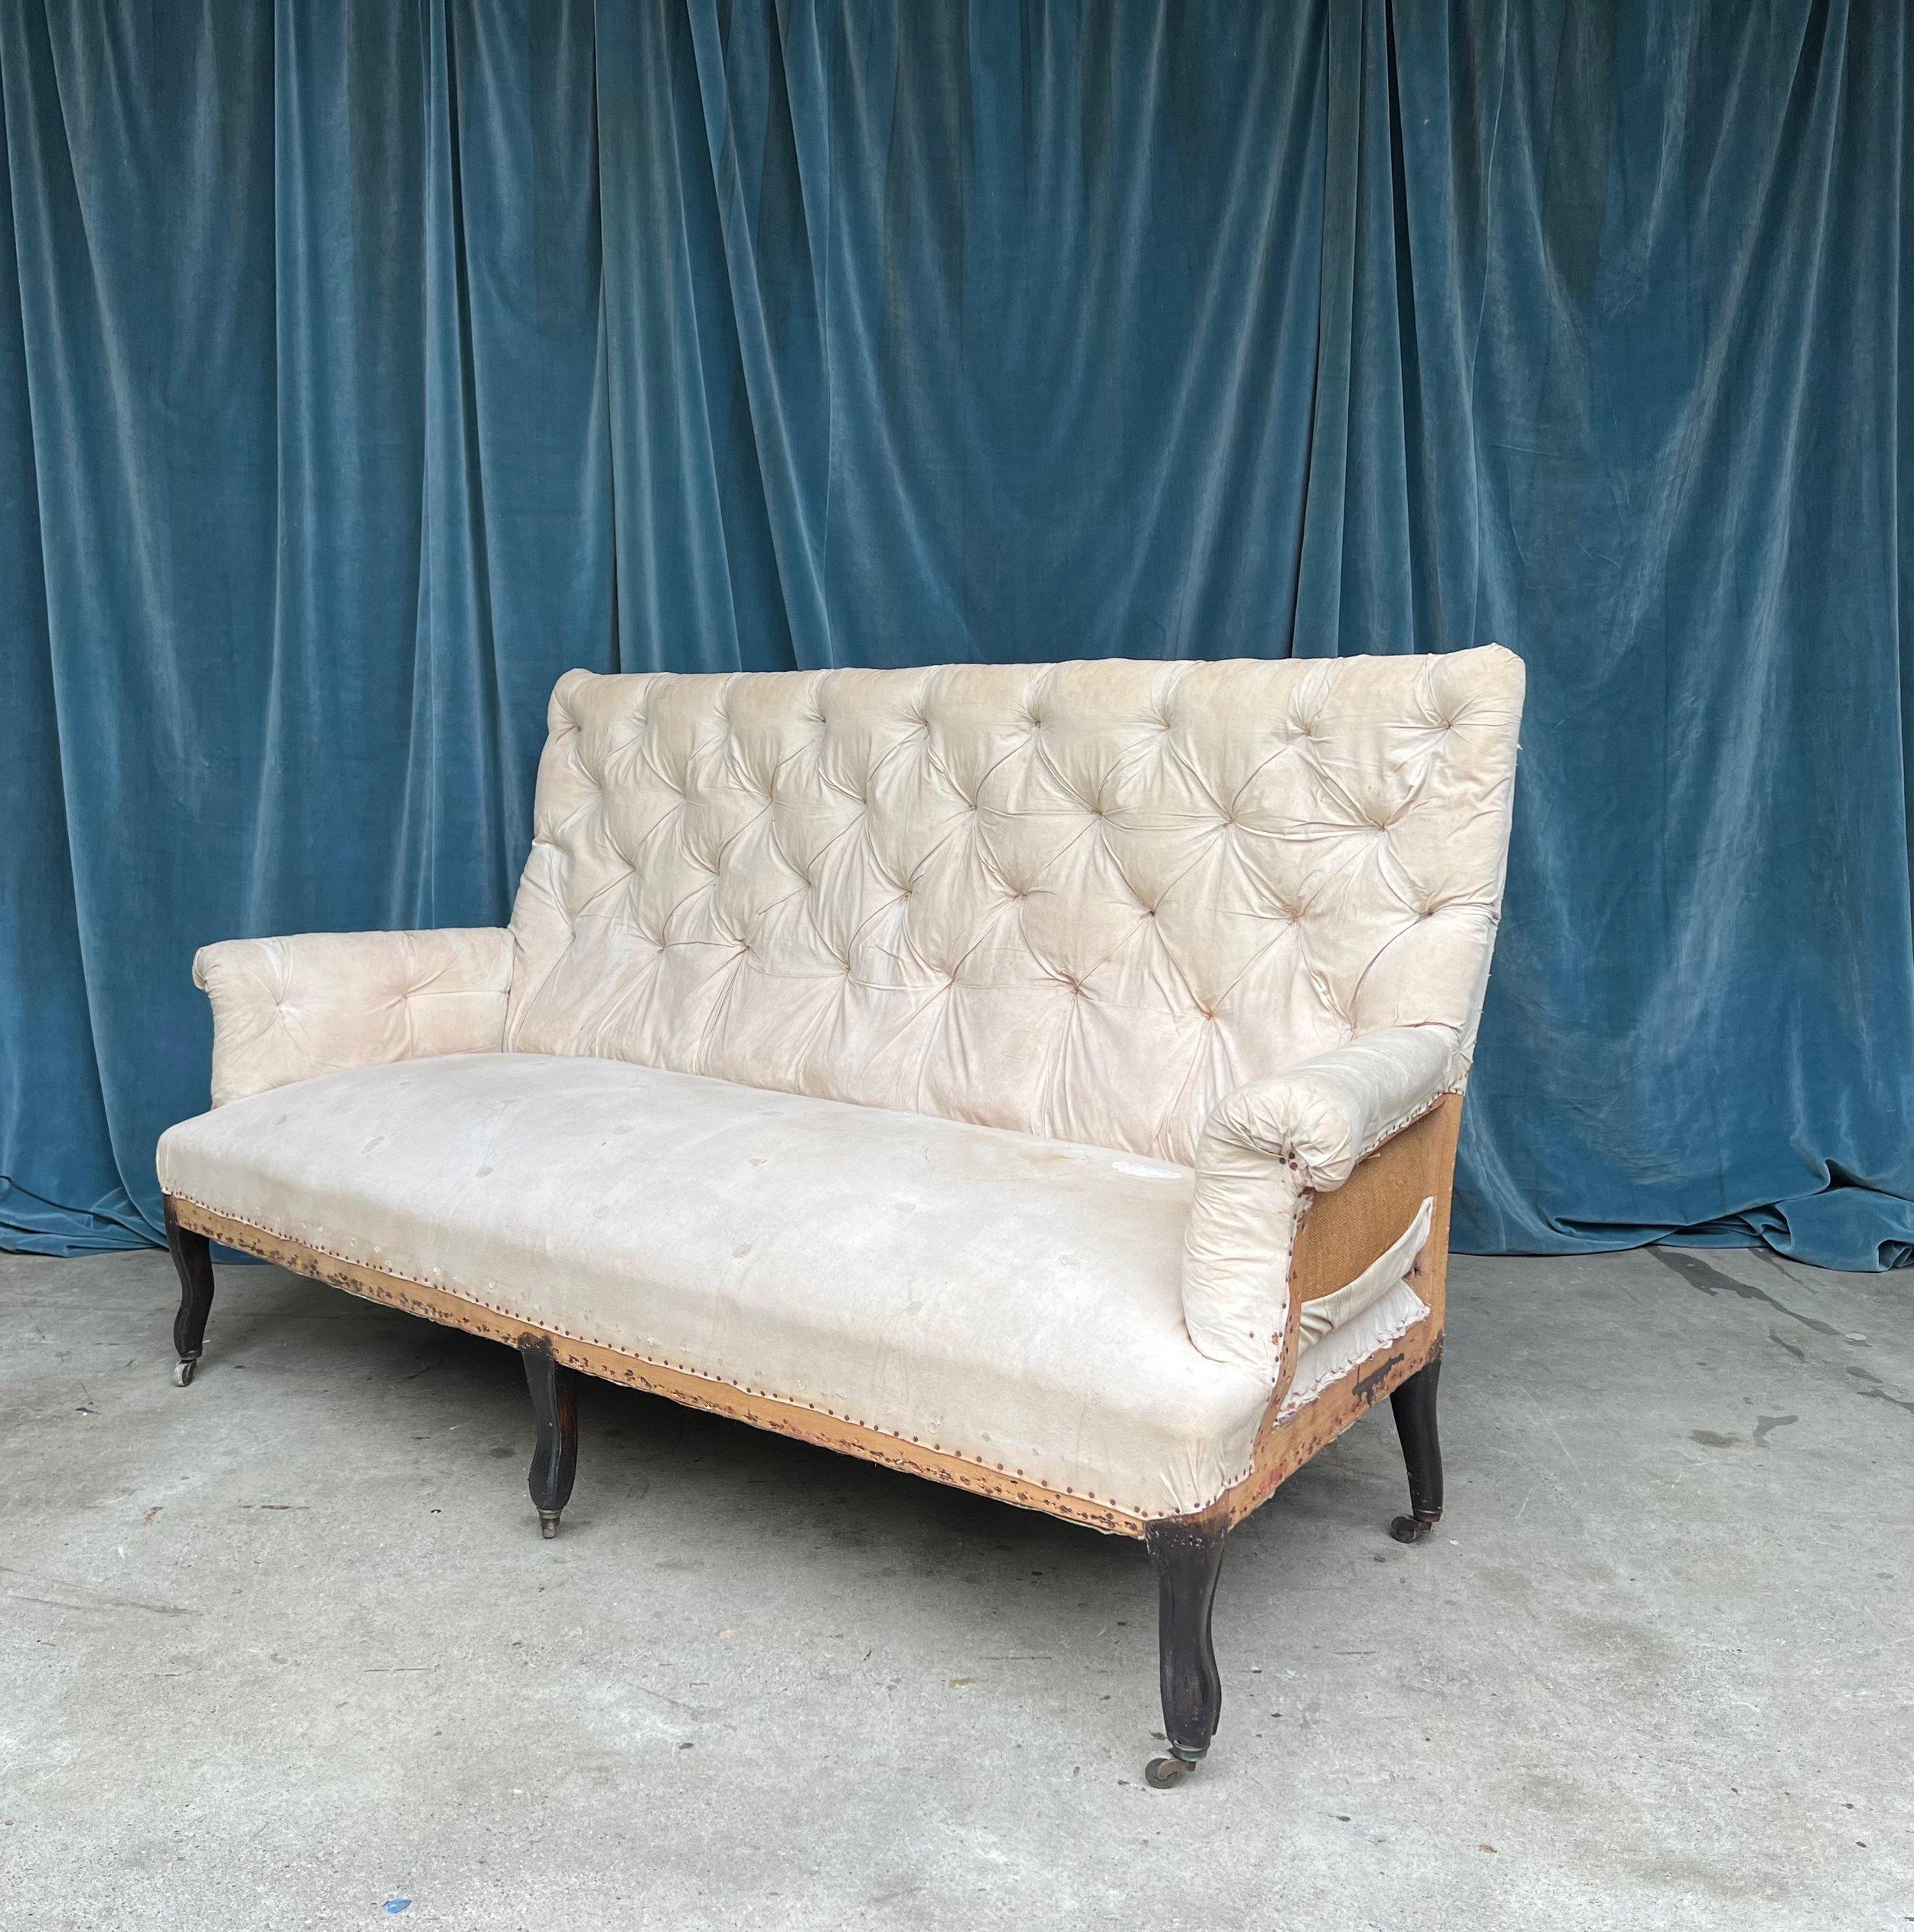 Großes französisches Napoleon-III-Sofa des 19. Jahrhunderts mit hoher Rückenlehne und Cabriole-Beinen. Die Rückenlehne dieses Sofas ist stark getuftet, ebenso wie die gerollten Armlehnen, die dem Design Grandeur und Raffinesse verleihen. Das Sofa